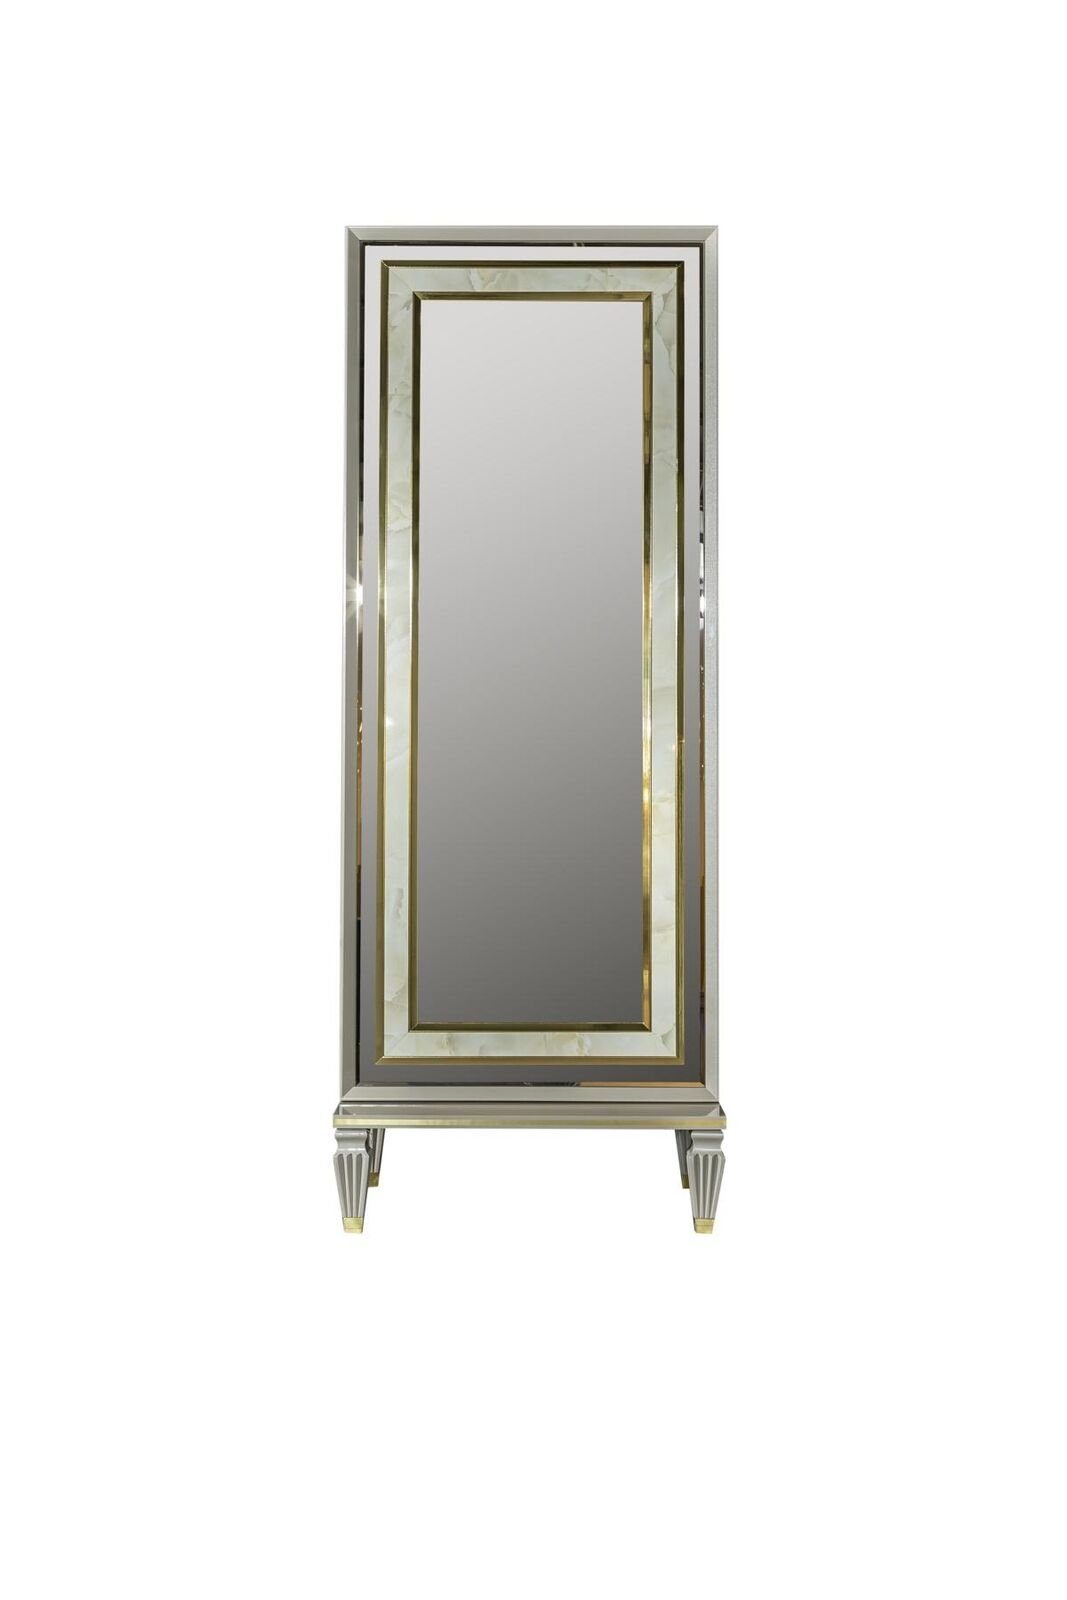 Grau Körpergröße Modern Standspiegel Spiegel Metall Spiegel Stehspiegel JVmoebel